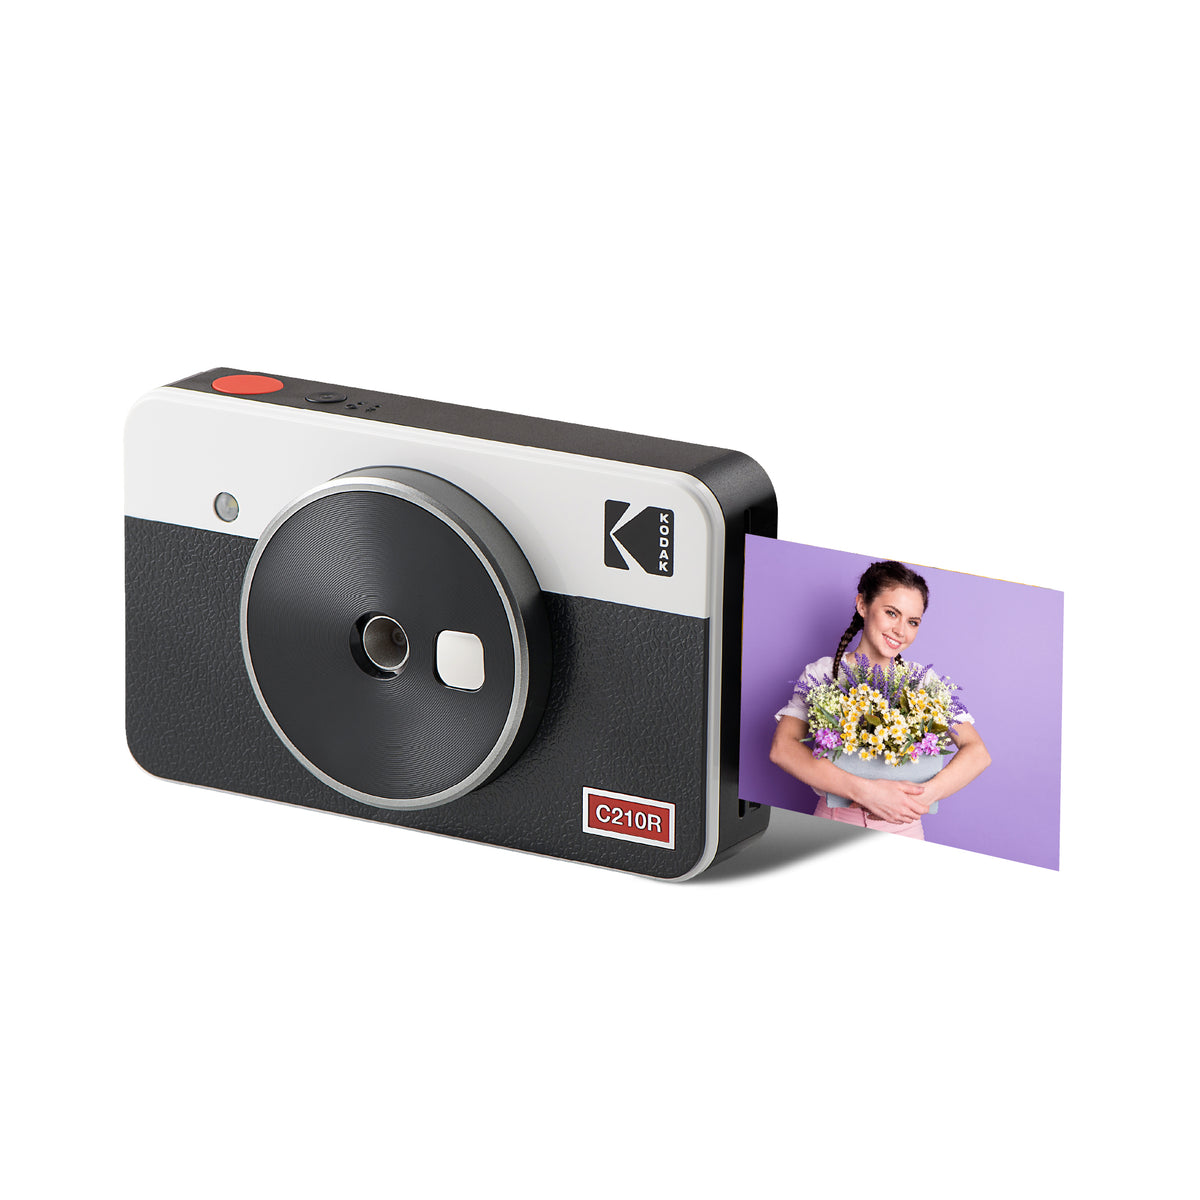 Printerstation plus Modèle d'imprimante Kodak Cartouches d'encre Kodak  PH-40 cartouche d'encre avec 40 feuilles de papier photo (d'origine)